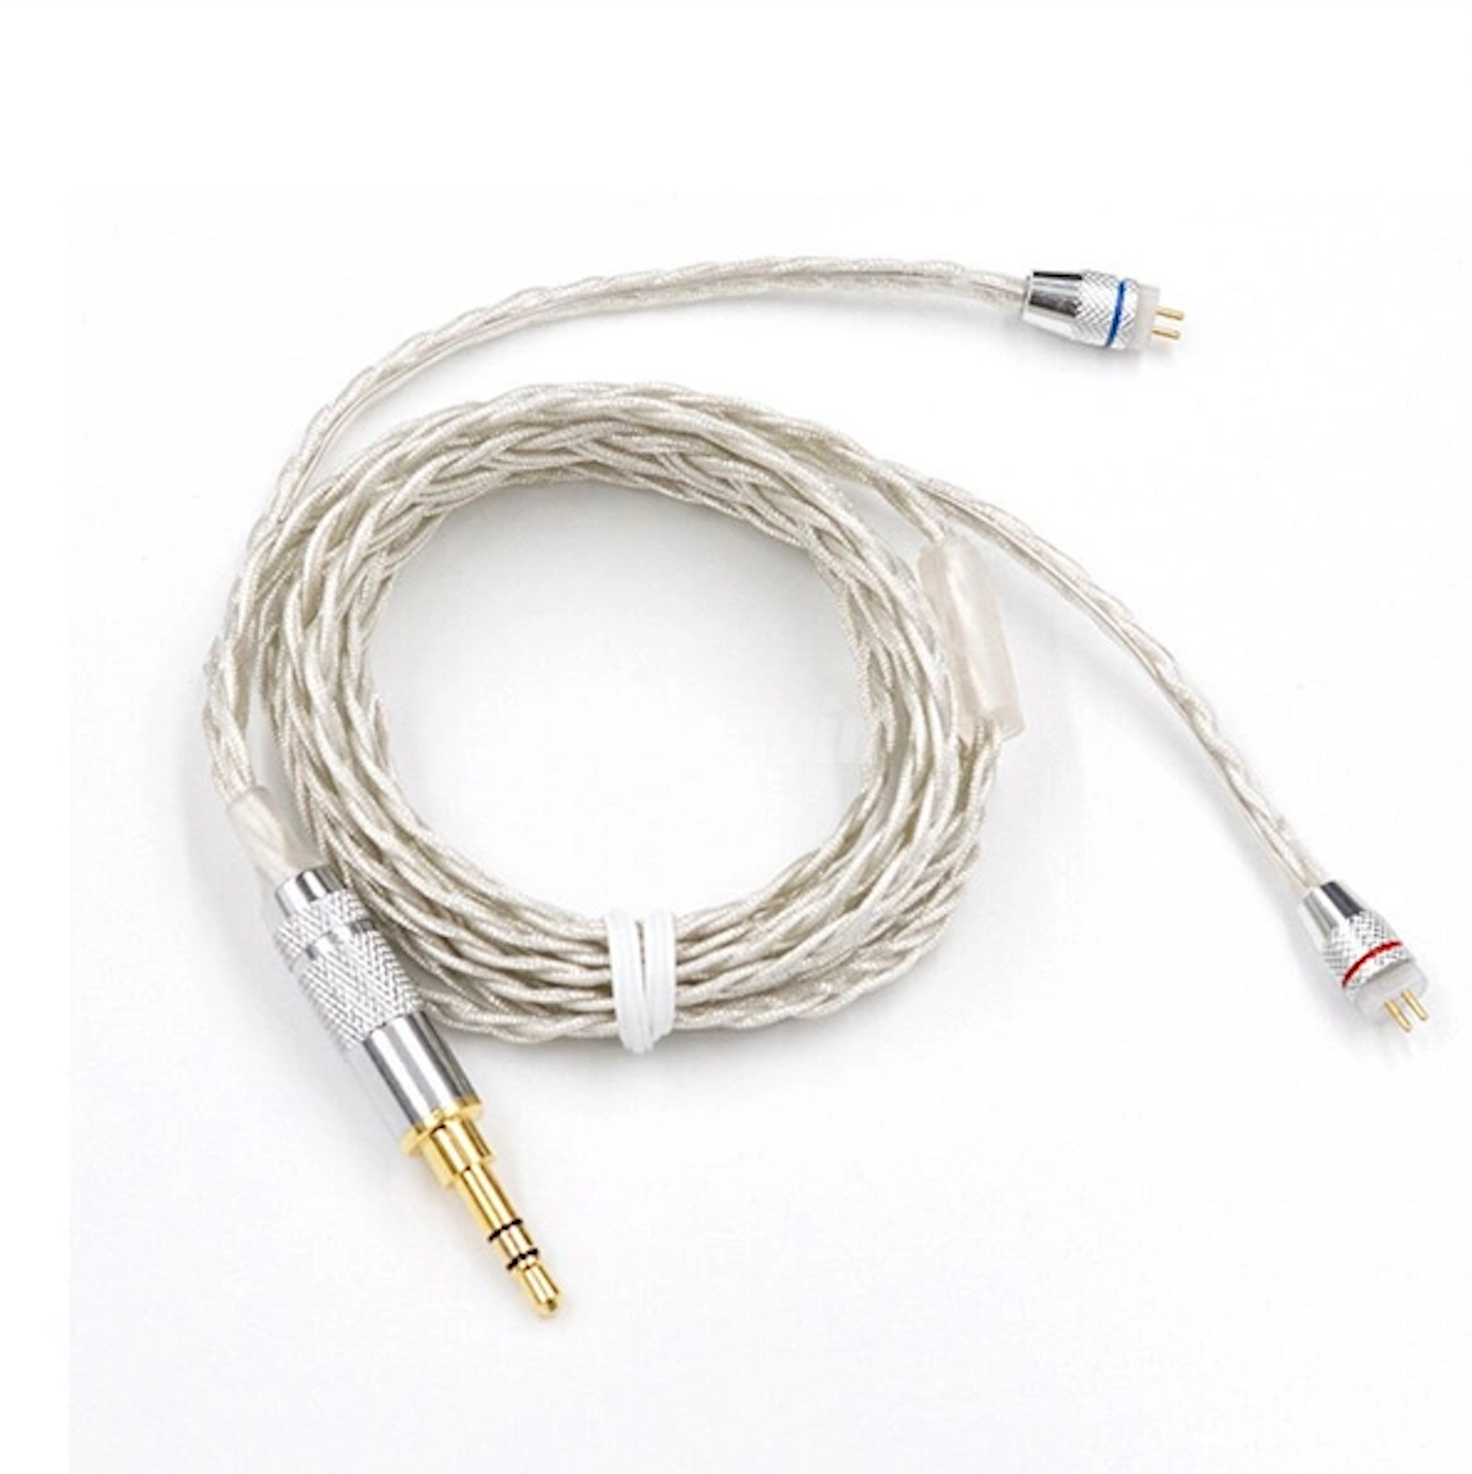 KZ - Cable de reemplazo/actualización - Plateado para enchufe A, B, C